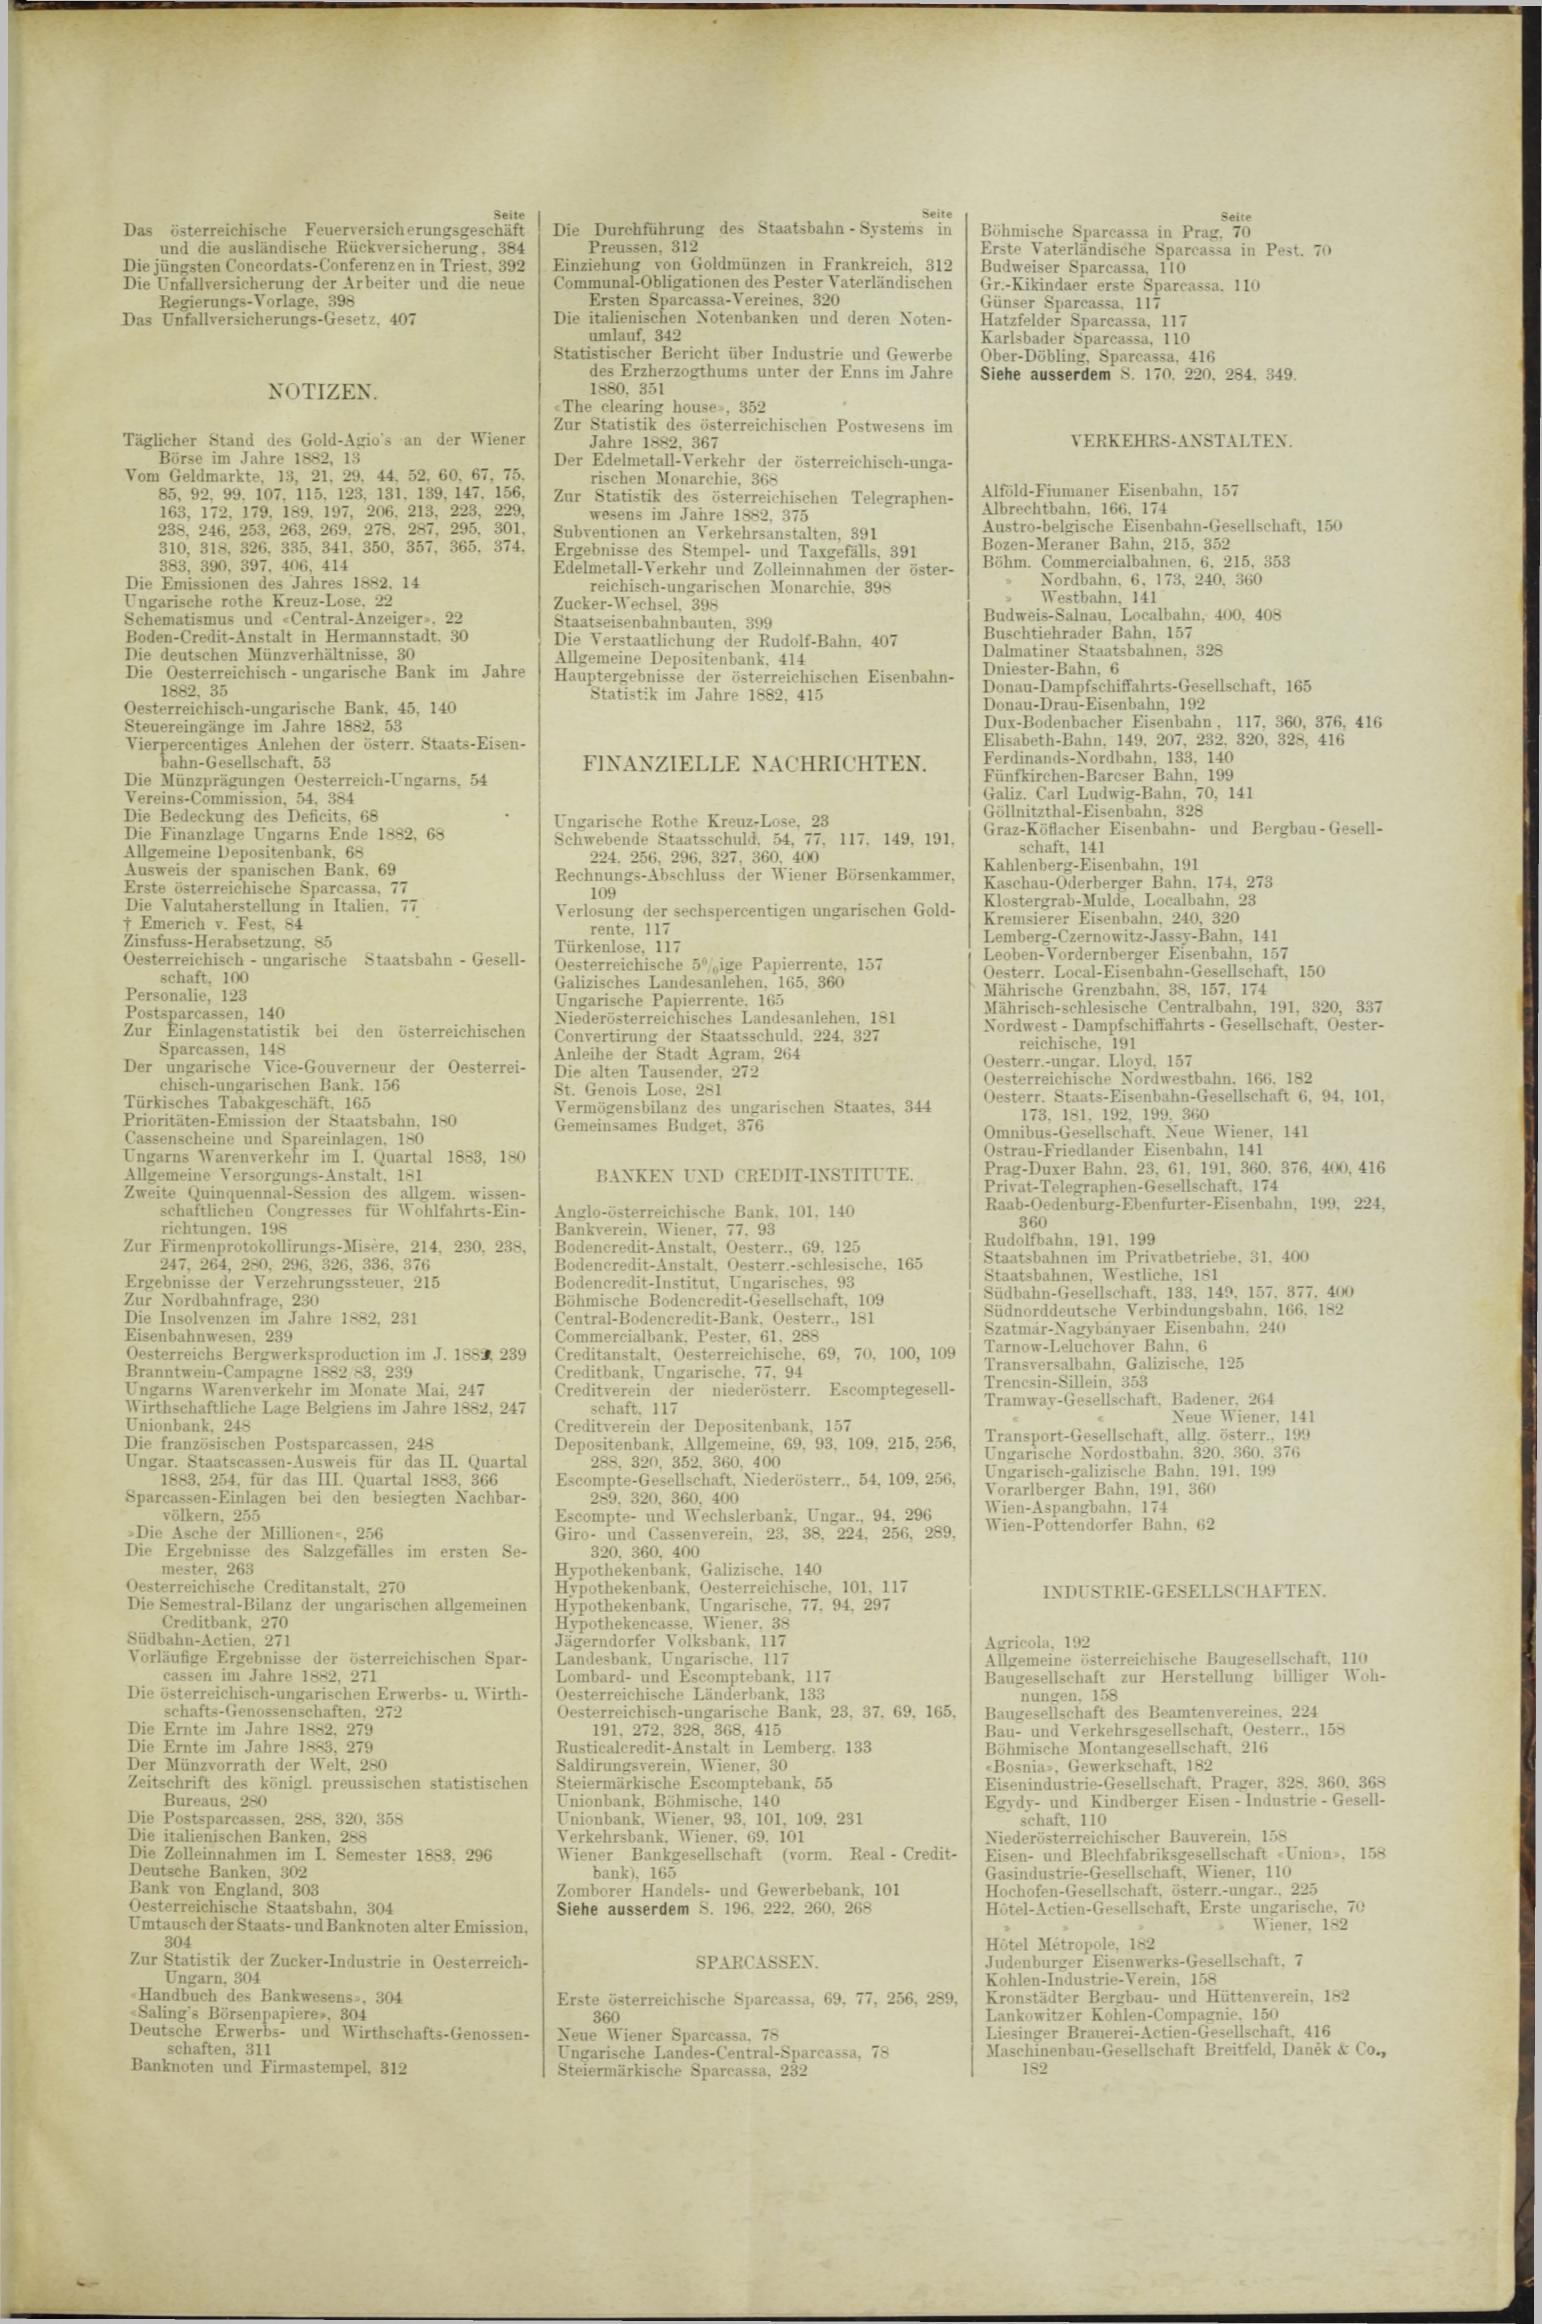 Der Tresor 21.06.1883 - Seite 11